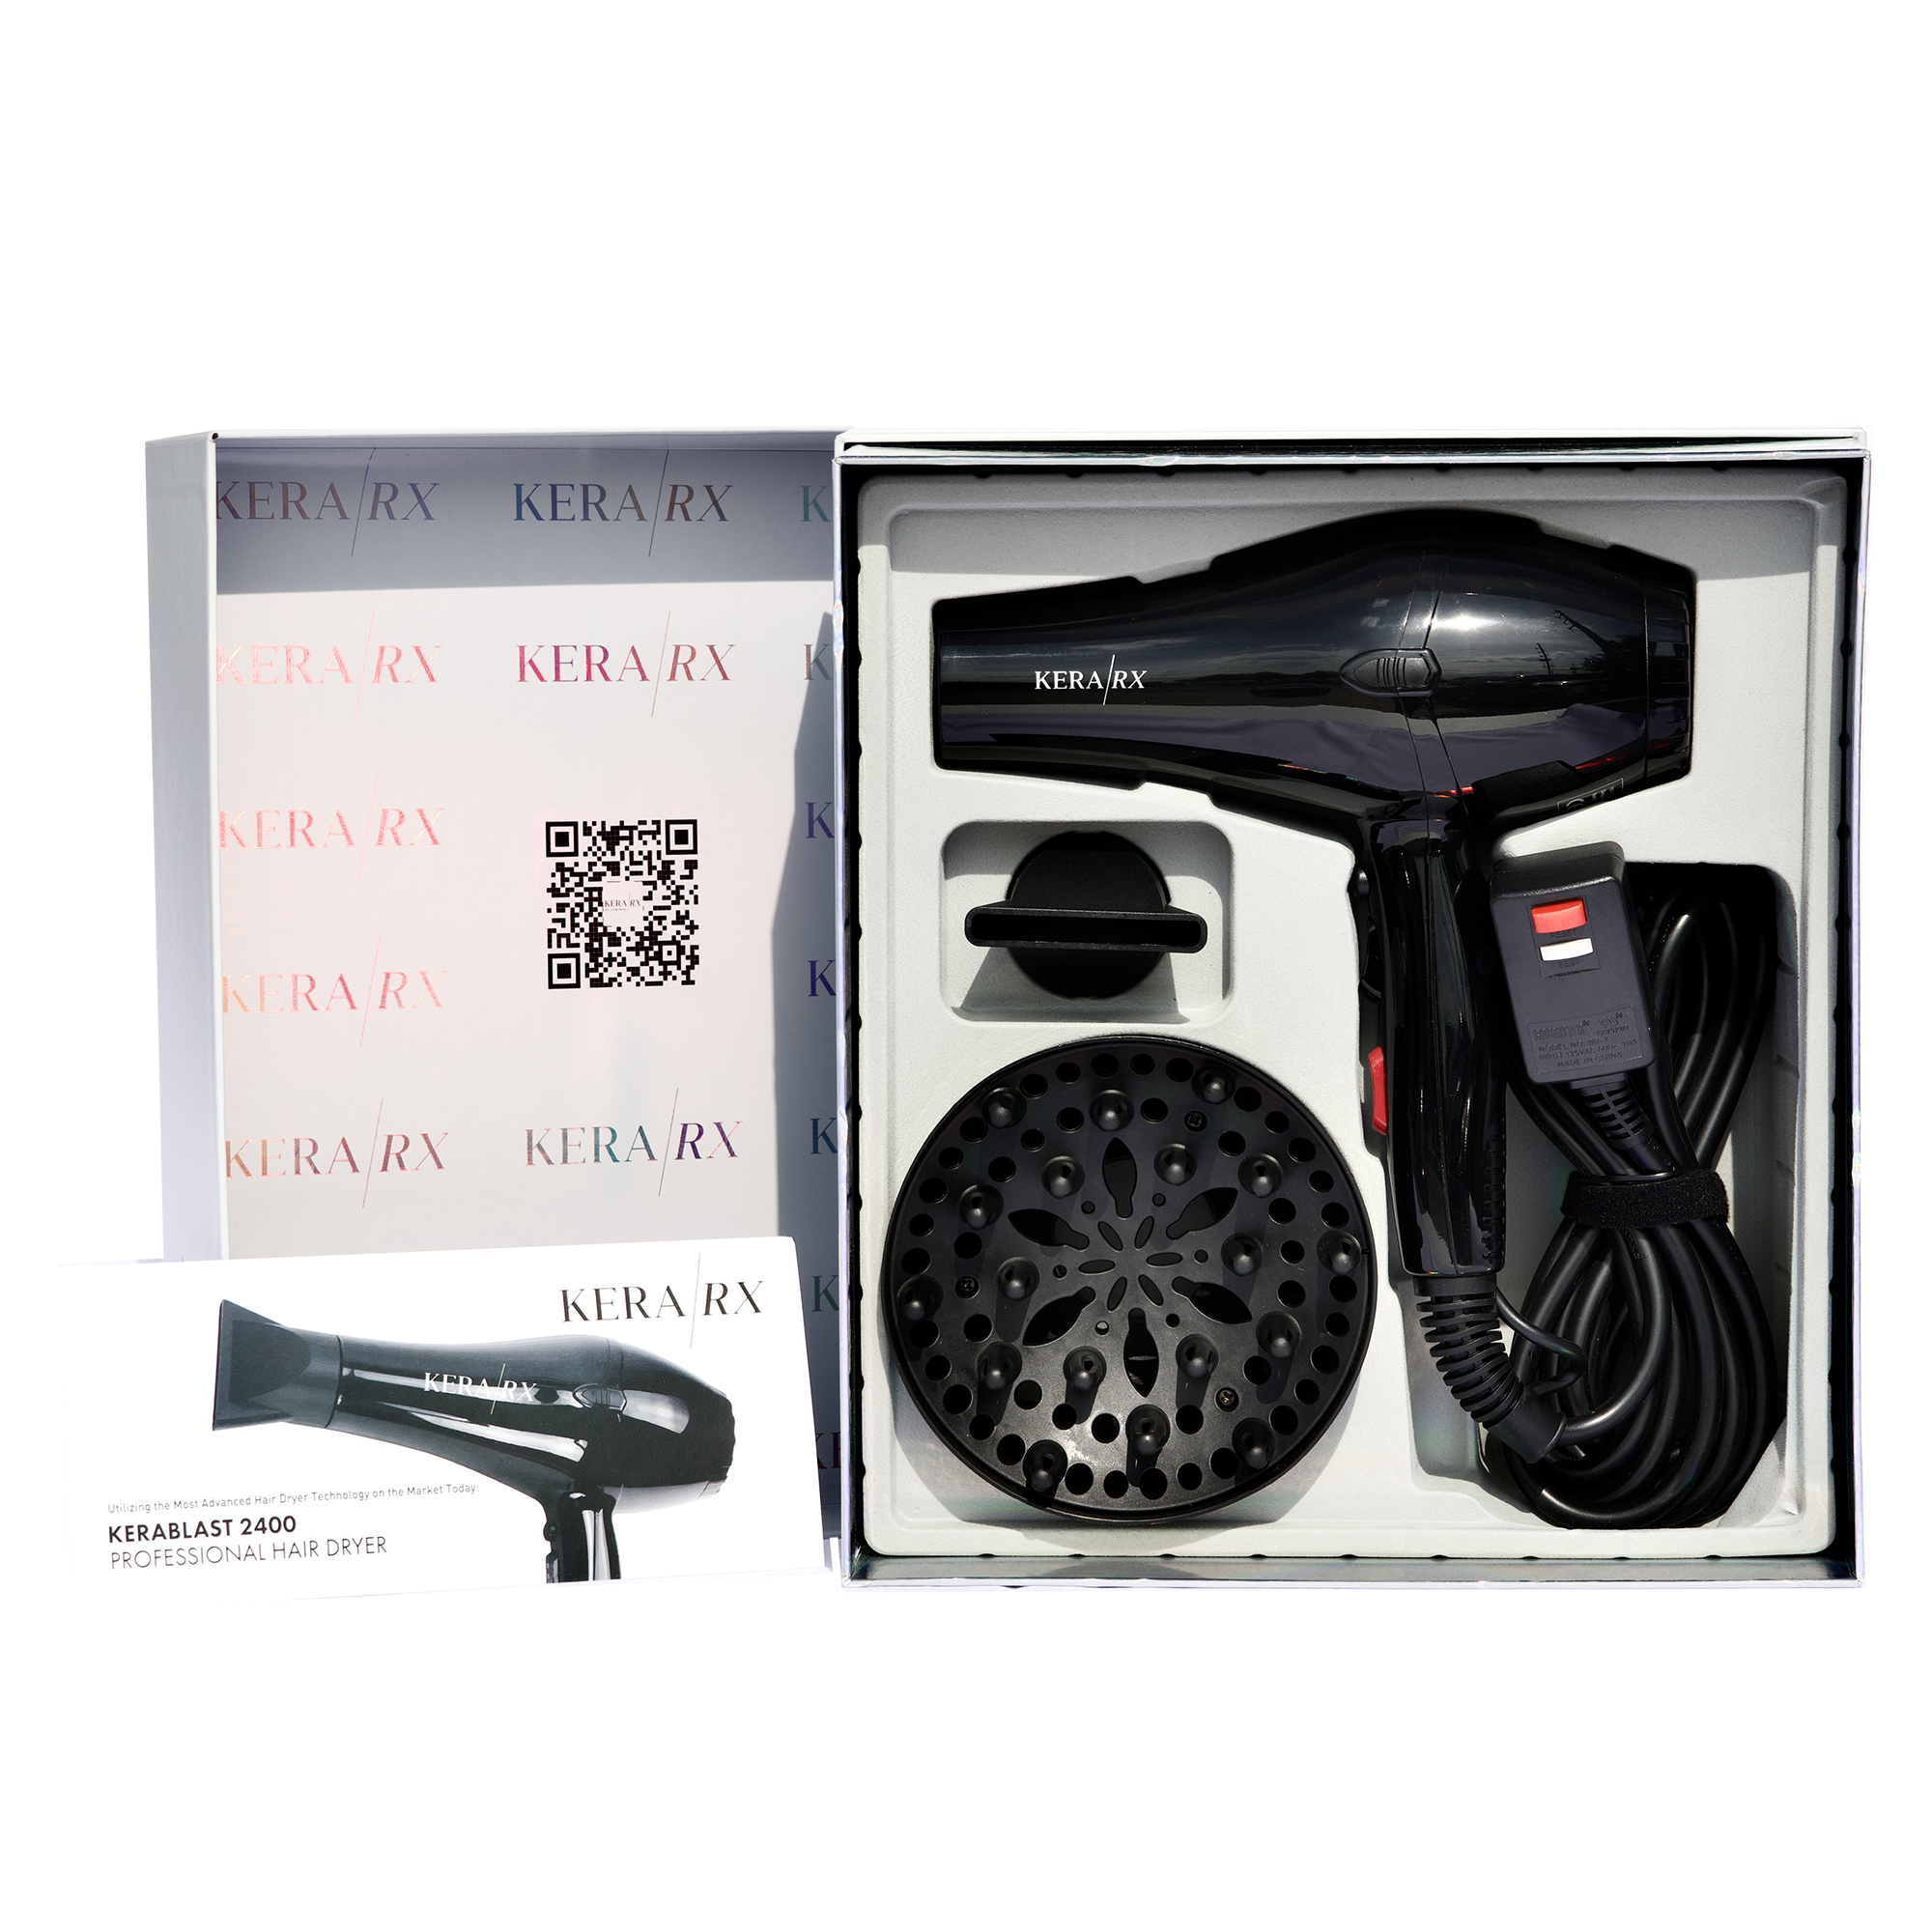 KeraRx Professional Hair Dryer | KERABLAST 2400 | Kera/RX Haircare